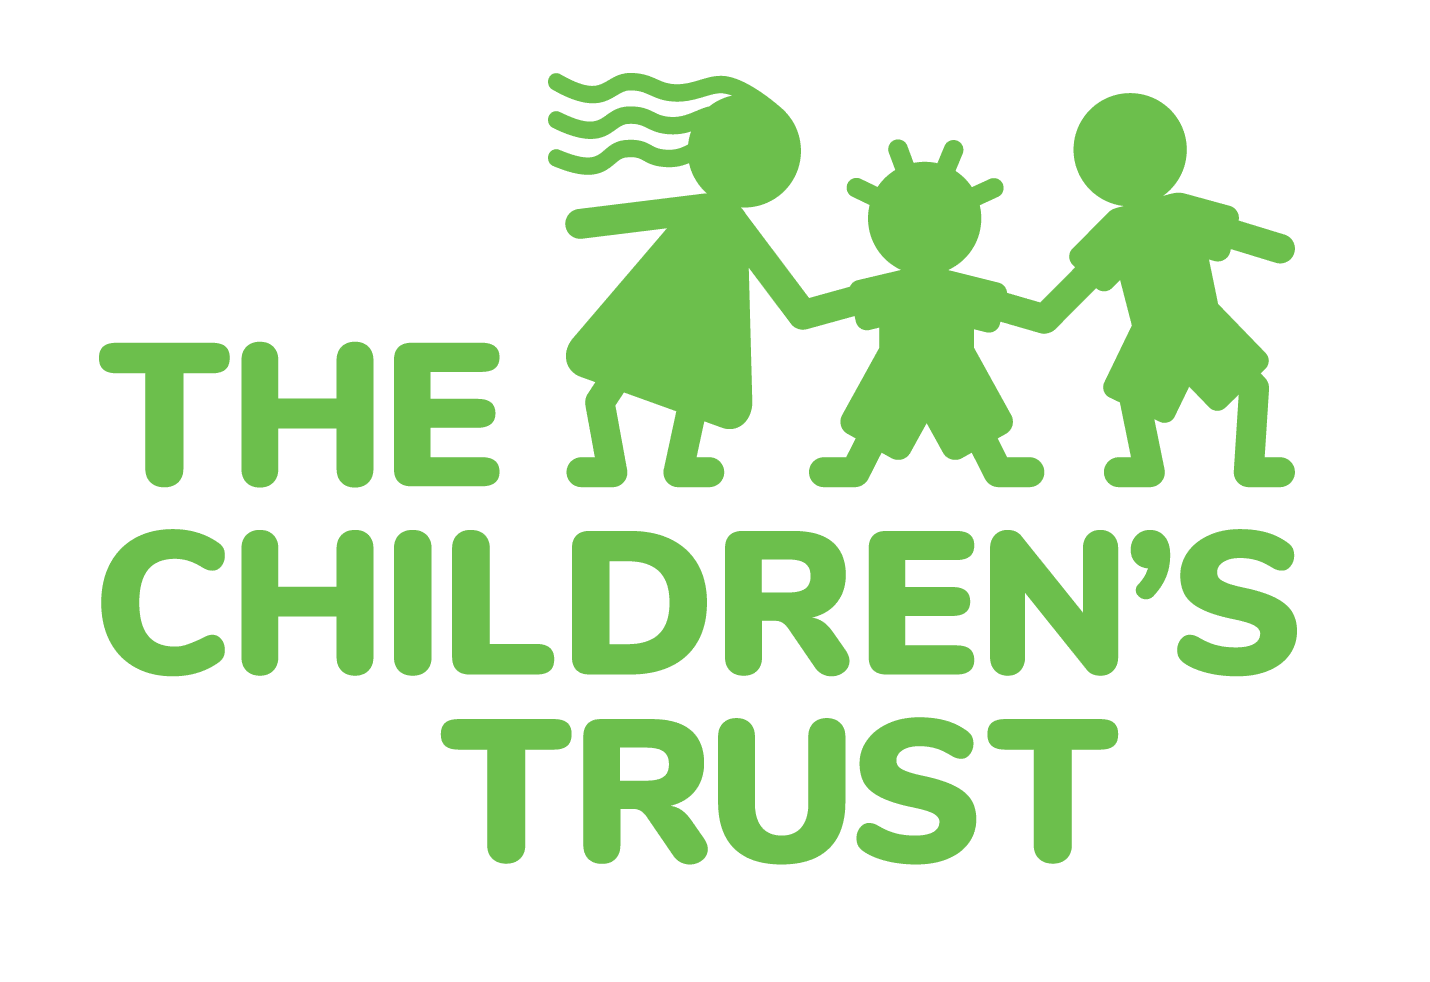 The Children's trust